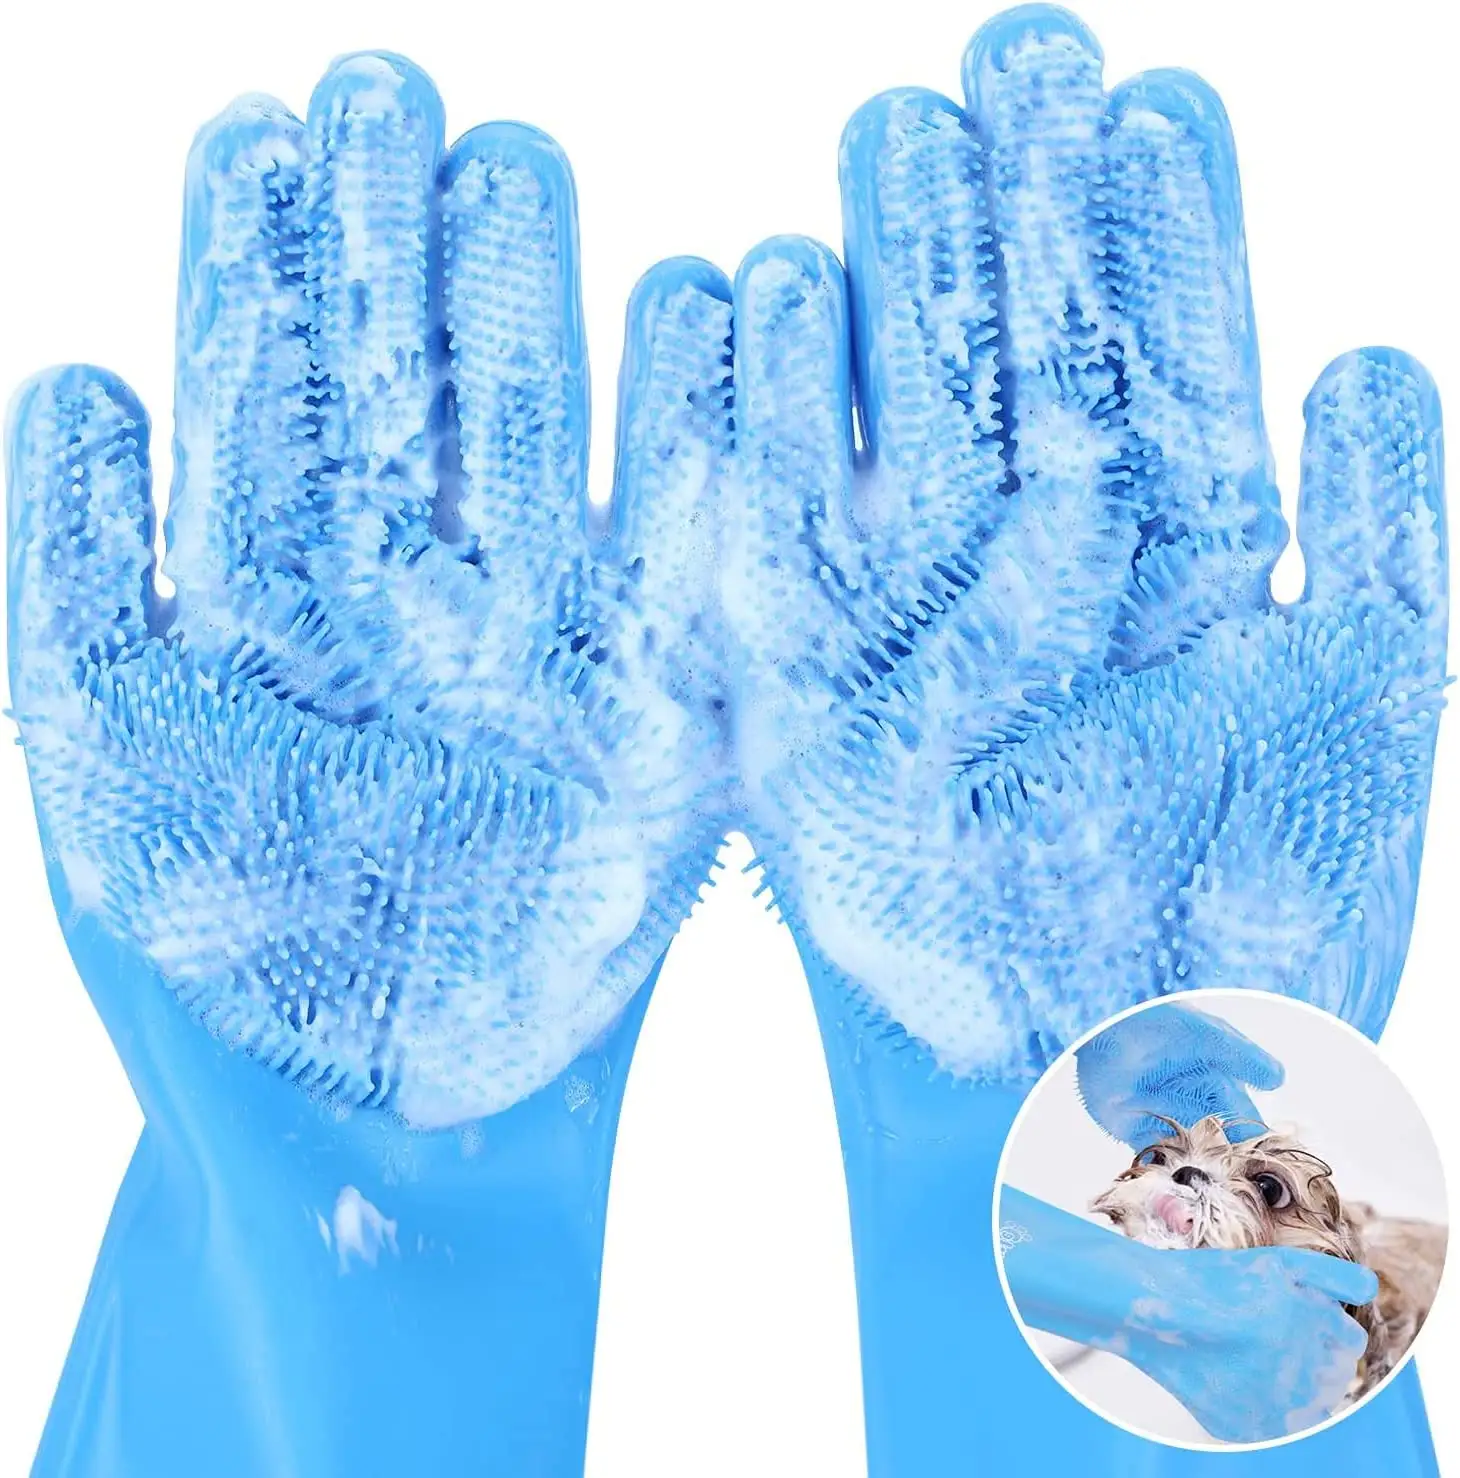 Sarung tangan mandi perawatan hewan peliharaan, penggosok sampo mandi kucing anjing pijat ajaib pembersih spons sarung tangan penghilang rambut silikon